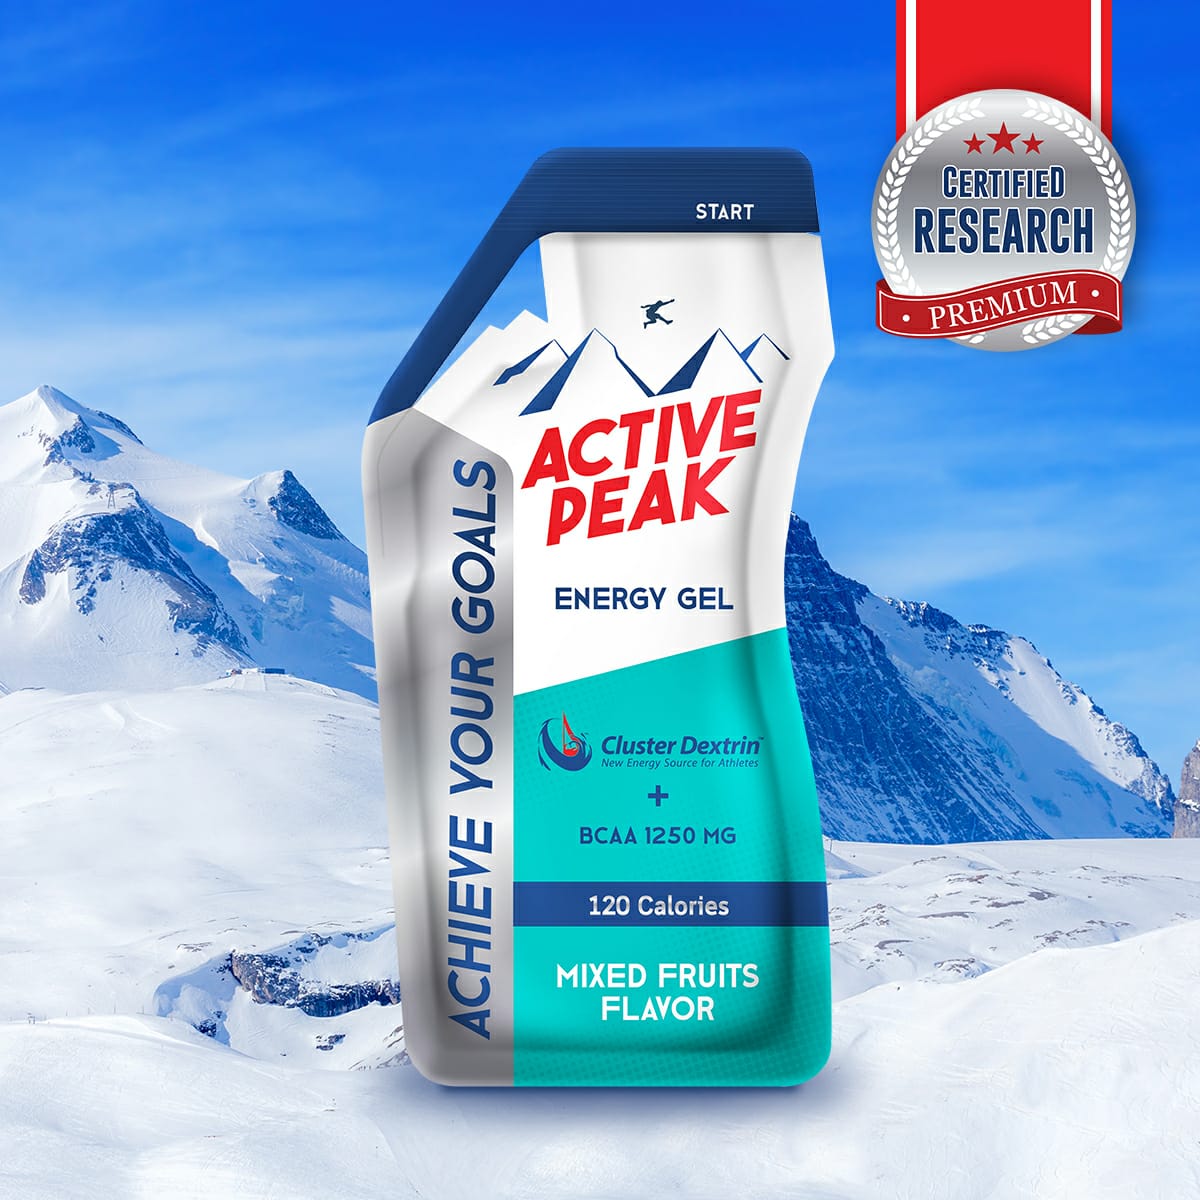 ACTIVE PEAK energy gel 40ml (Mixed Fruits Flavor)